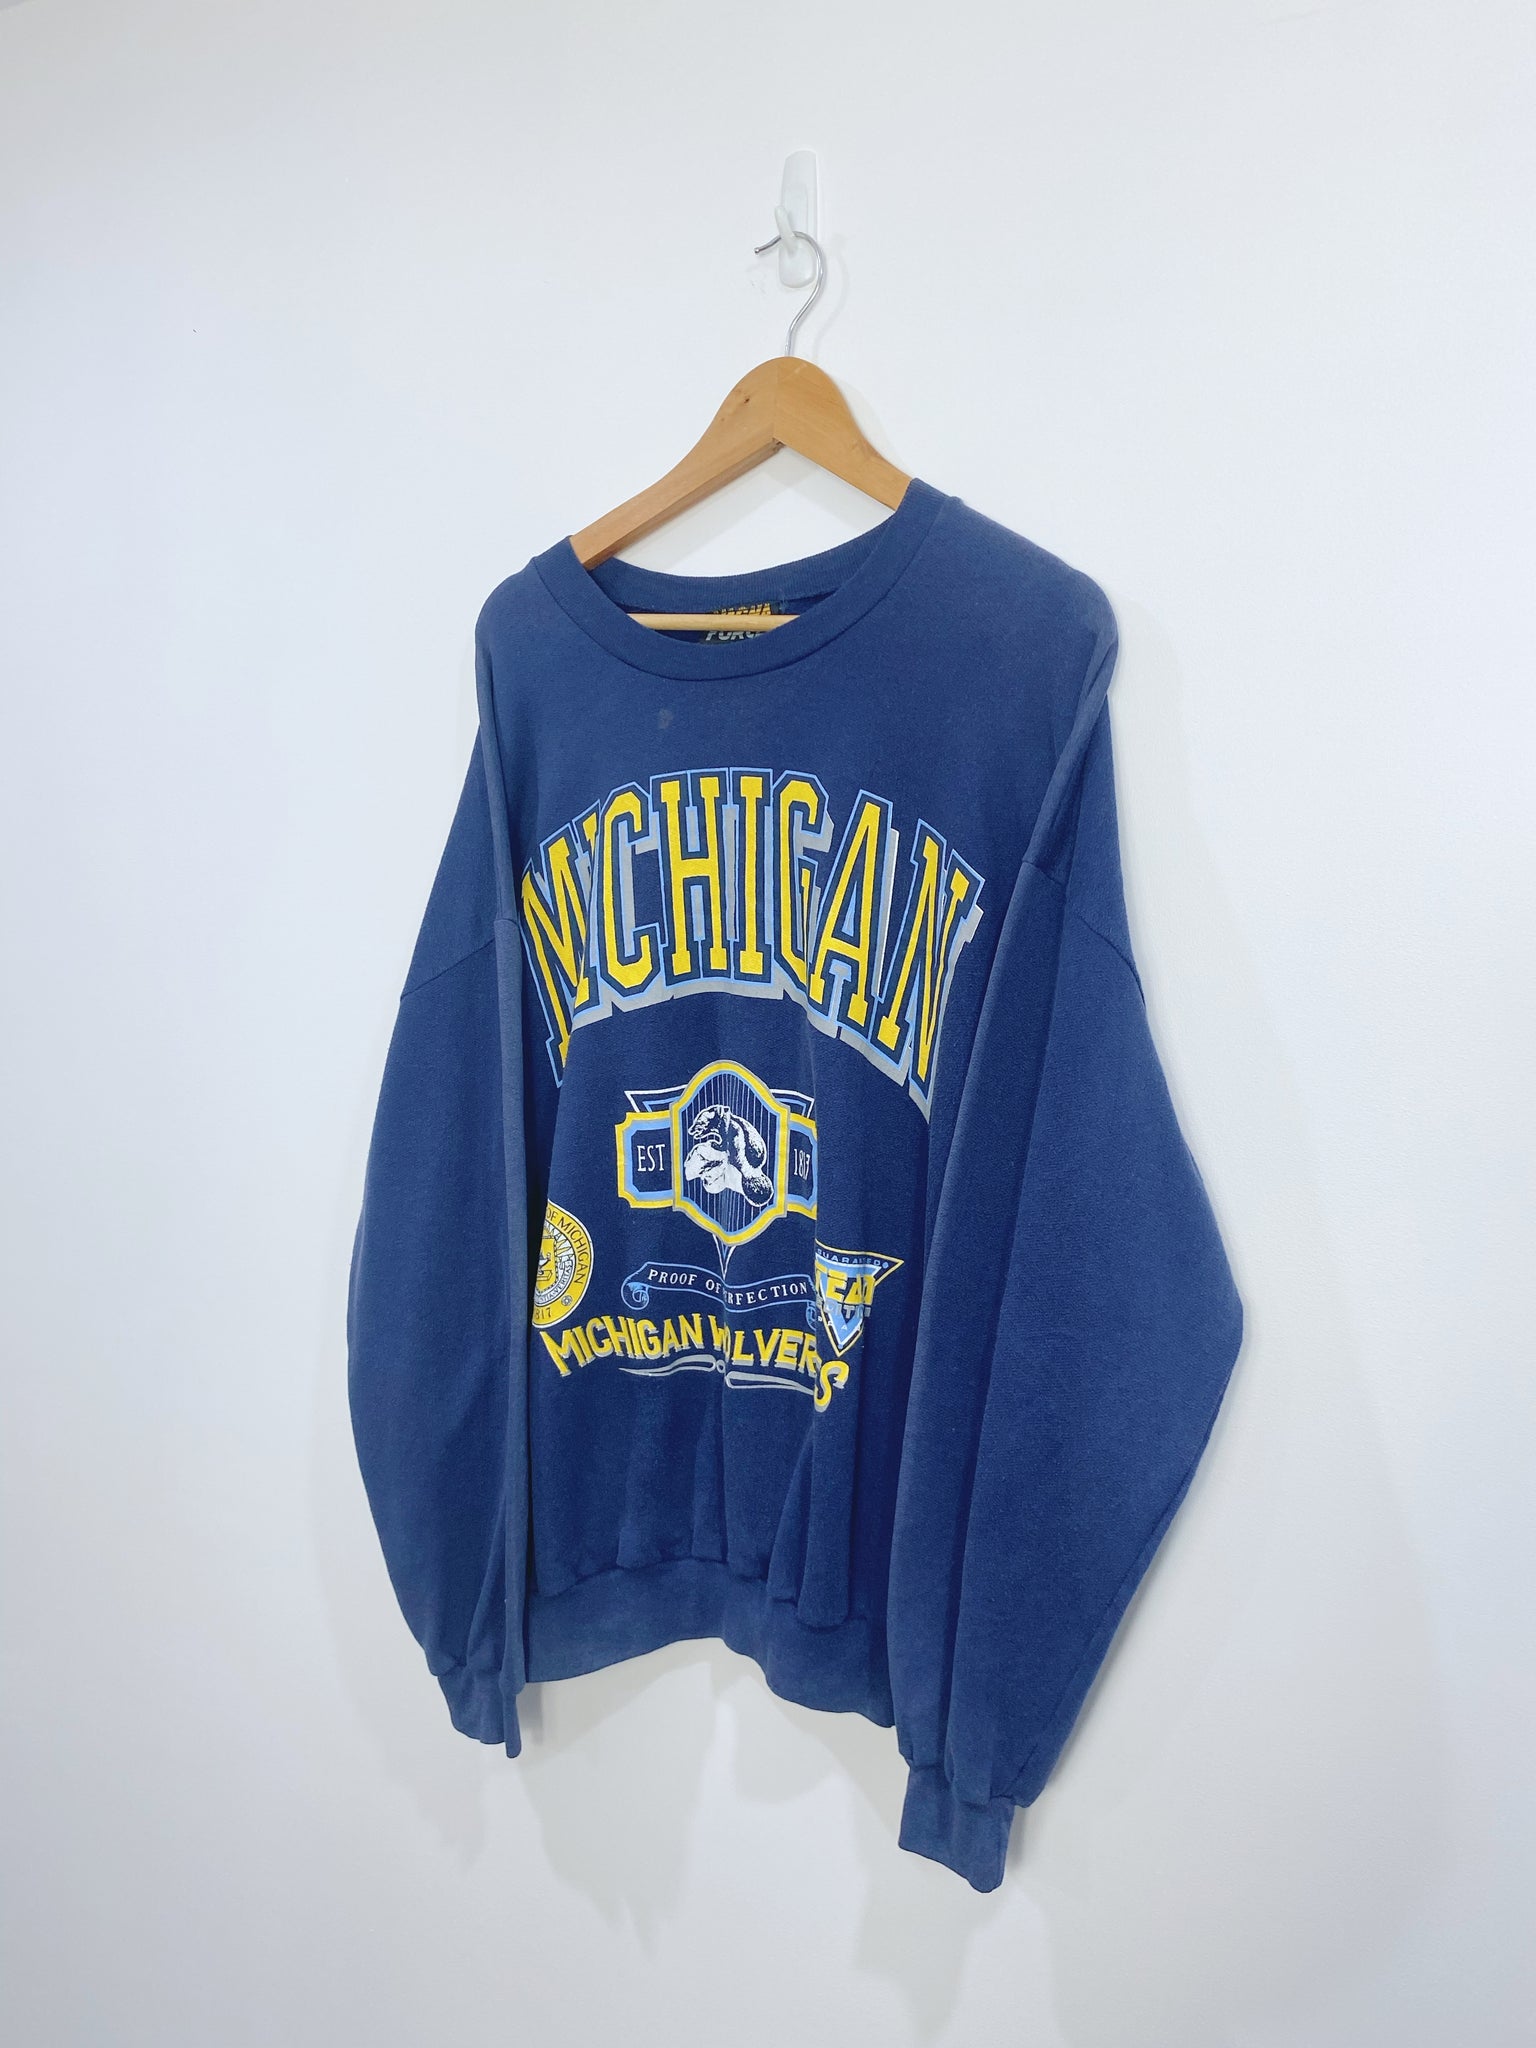 Vintage 90s Michigan Wolverines Sweatshirt L